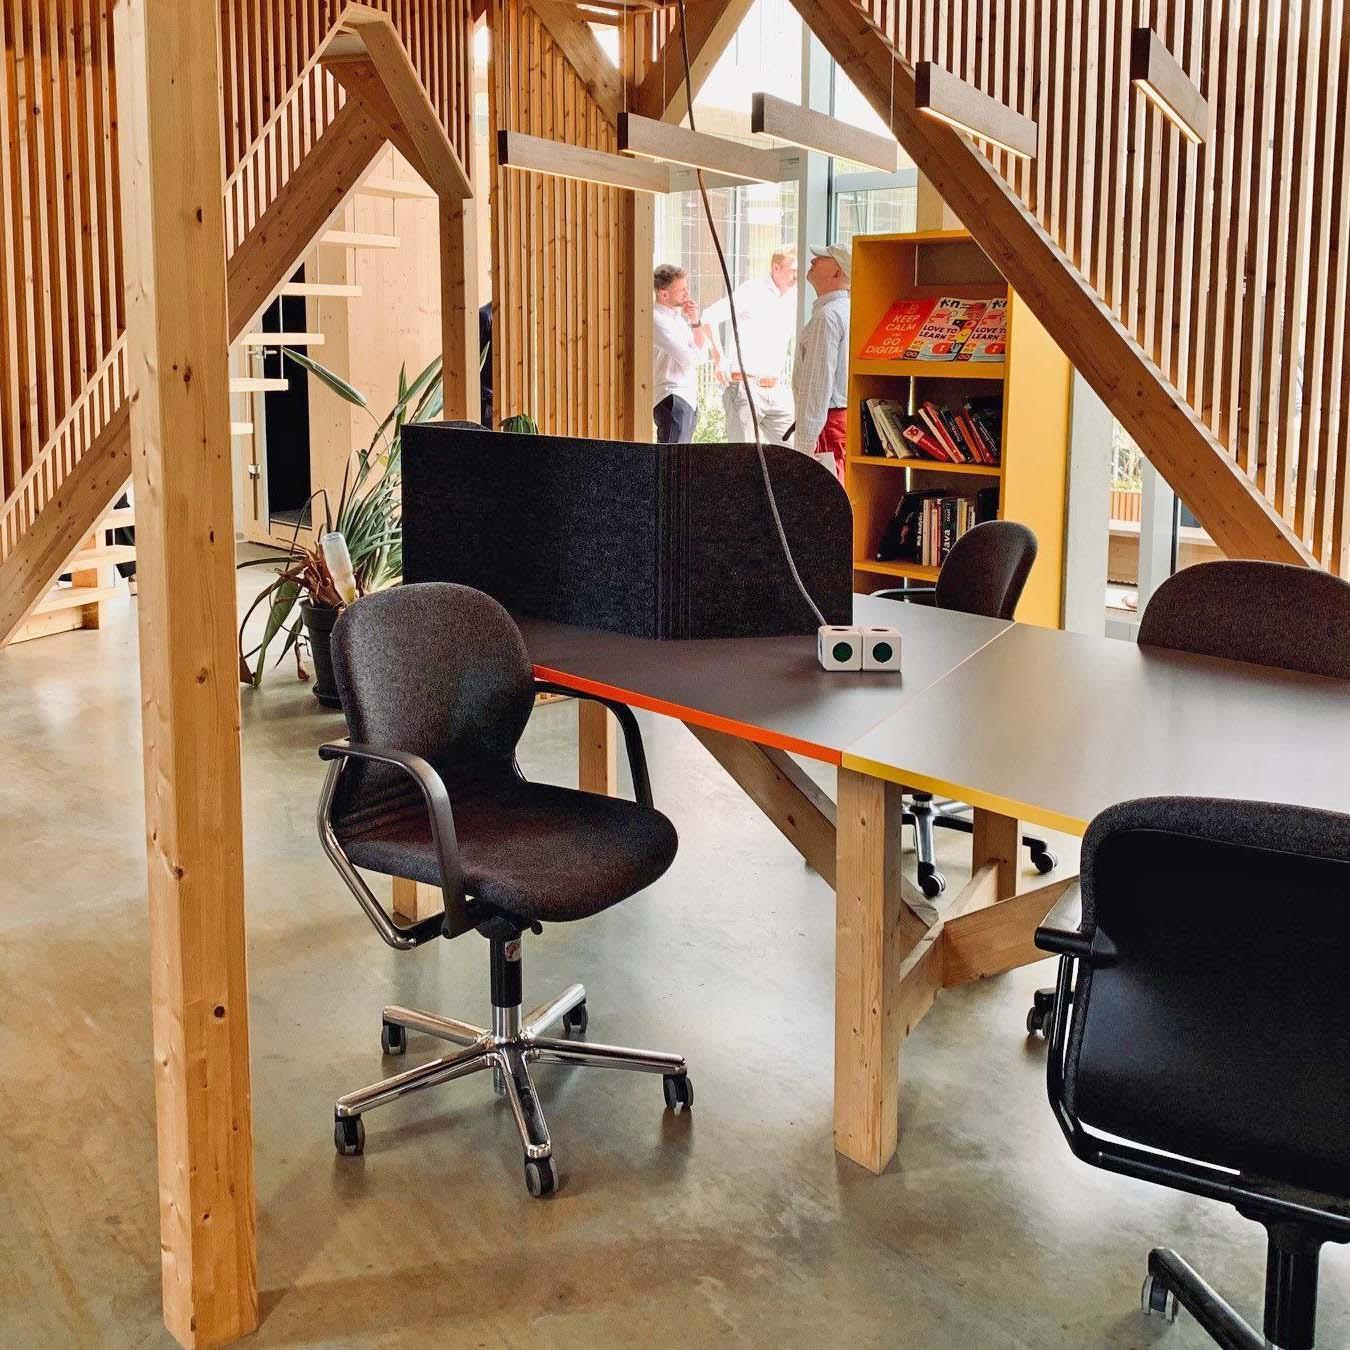 El diseño ideal de un concepto híbrido - Chair and Work